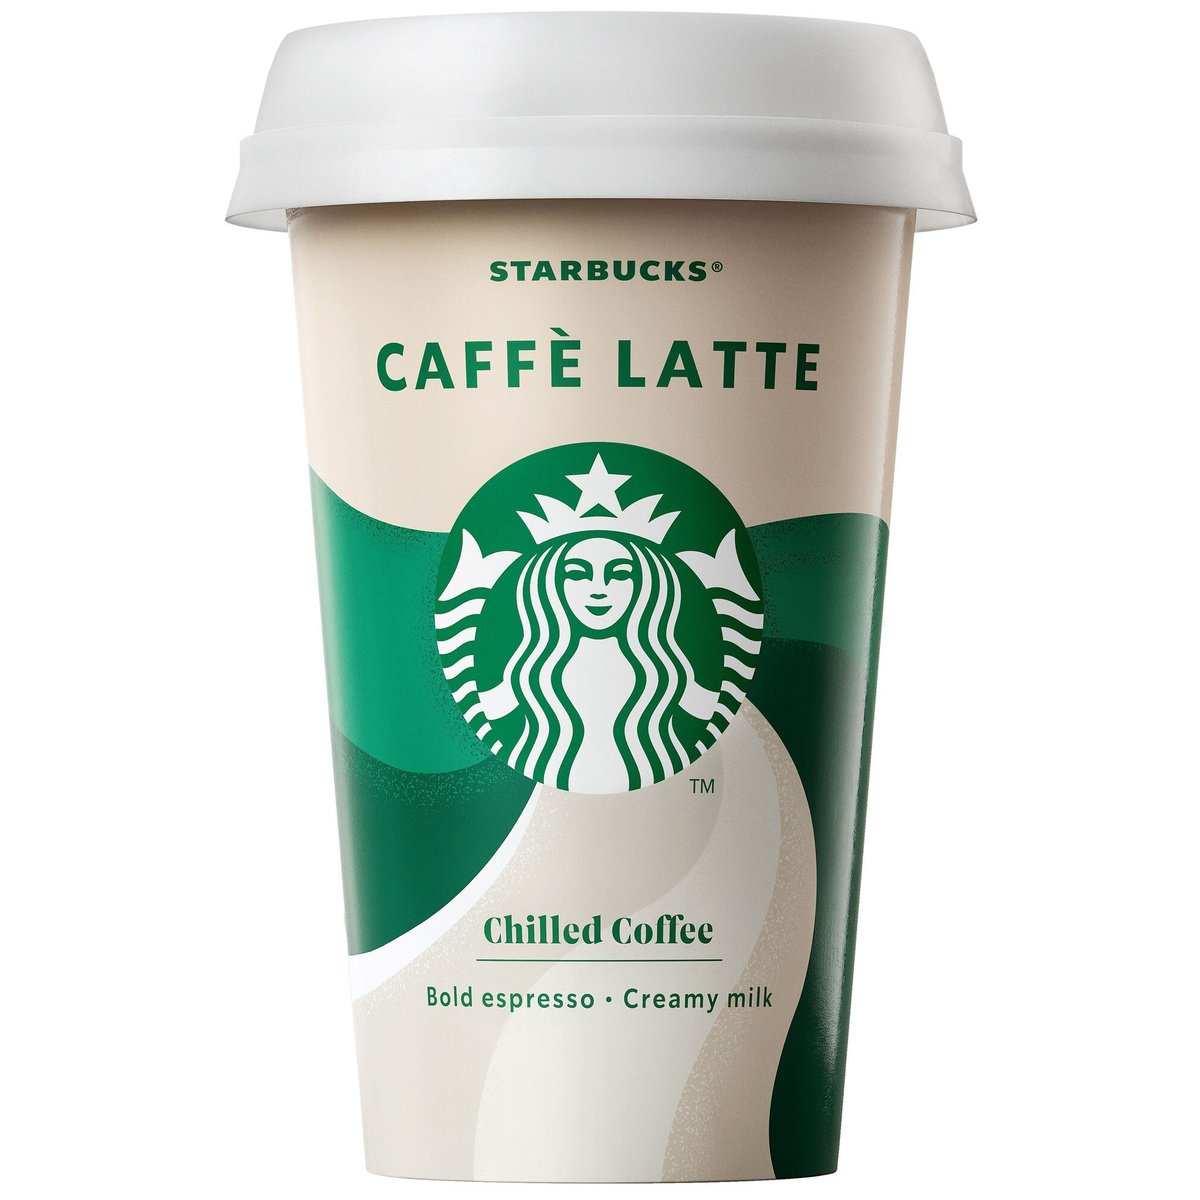 Starbucks Caffe latte